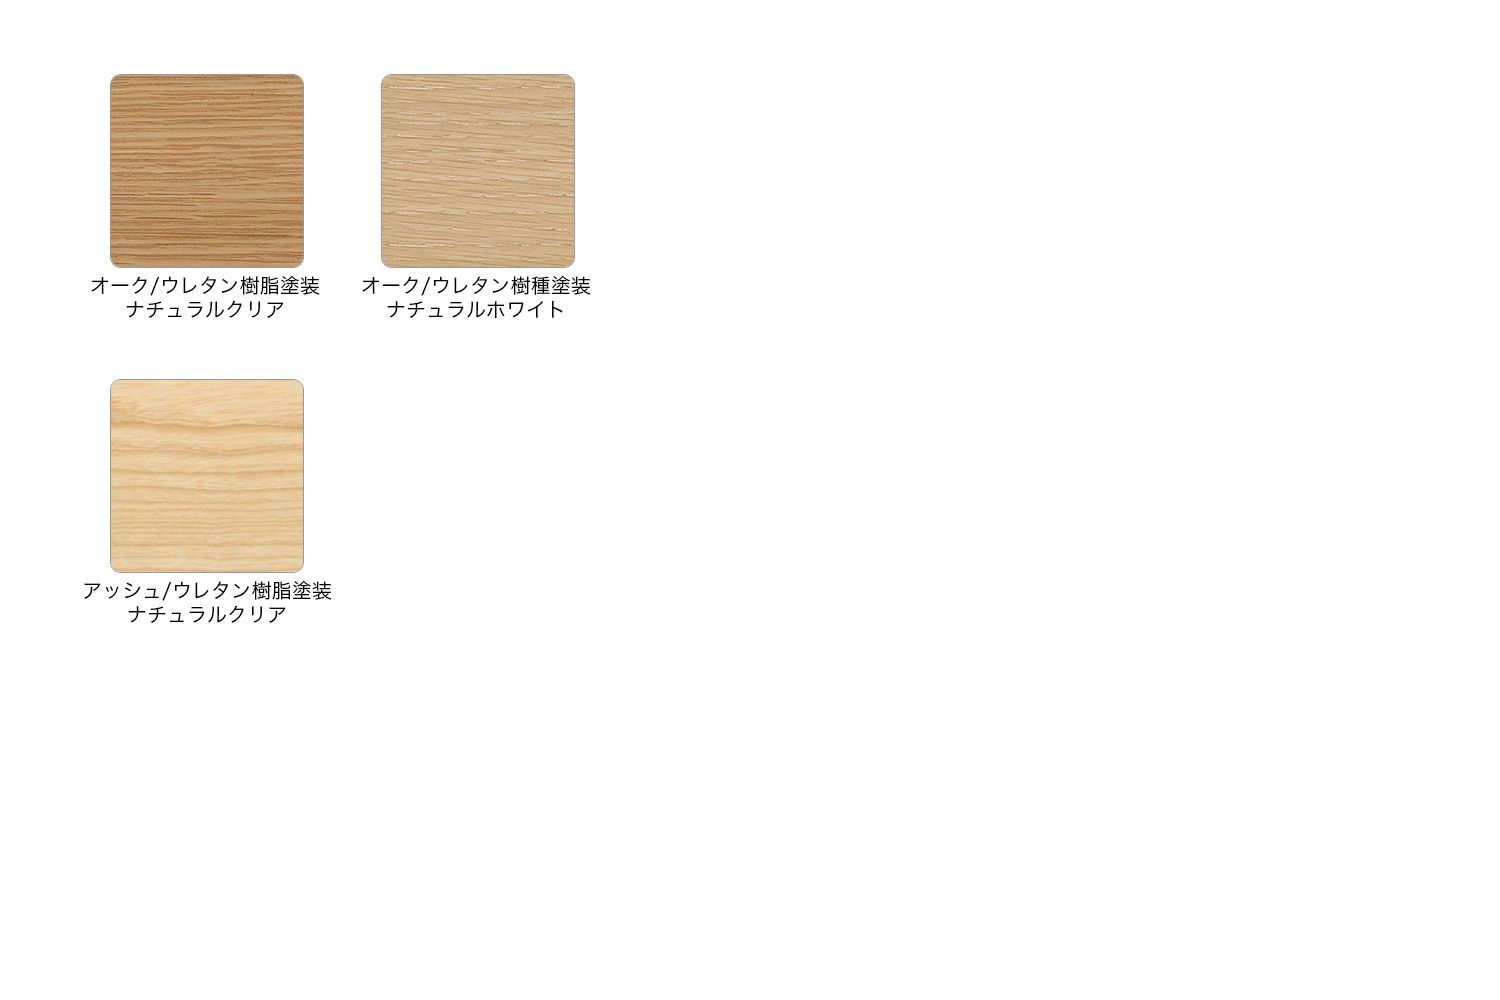 マルニ木工 ブルーノ ソファ 2シーター / ワイド2シーター / 3シーター ウッド カラーバリエーション